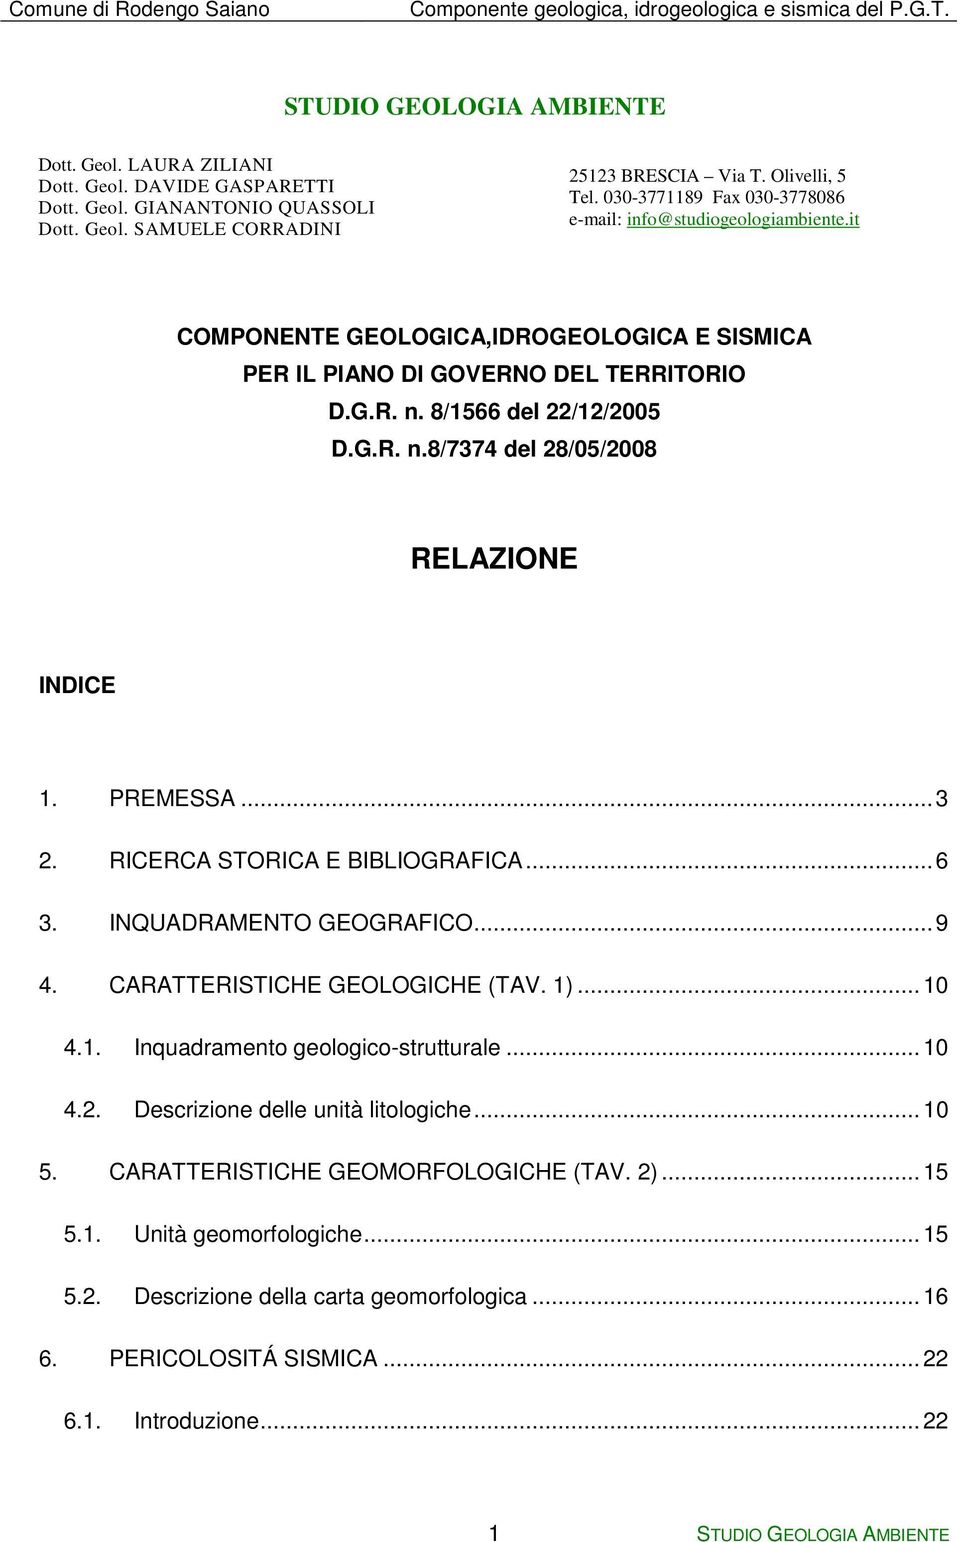 it COMPONENTE GEOLOGICA,IDROGEOLOGICA E SISMICA PER IL PIANO DI GOVERNO DEL TERRITORIO D.G.R. n. 8/1566 del 22/12/2005 D.G.R. n.8/7374 del 28/05/2008 RELAZIONE INDICE 1. PREMESSA...3 2.